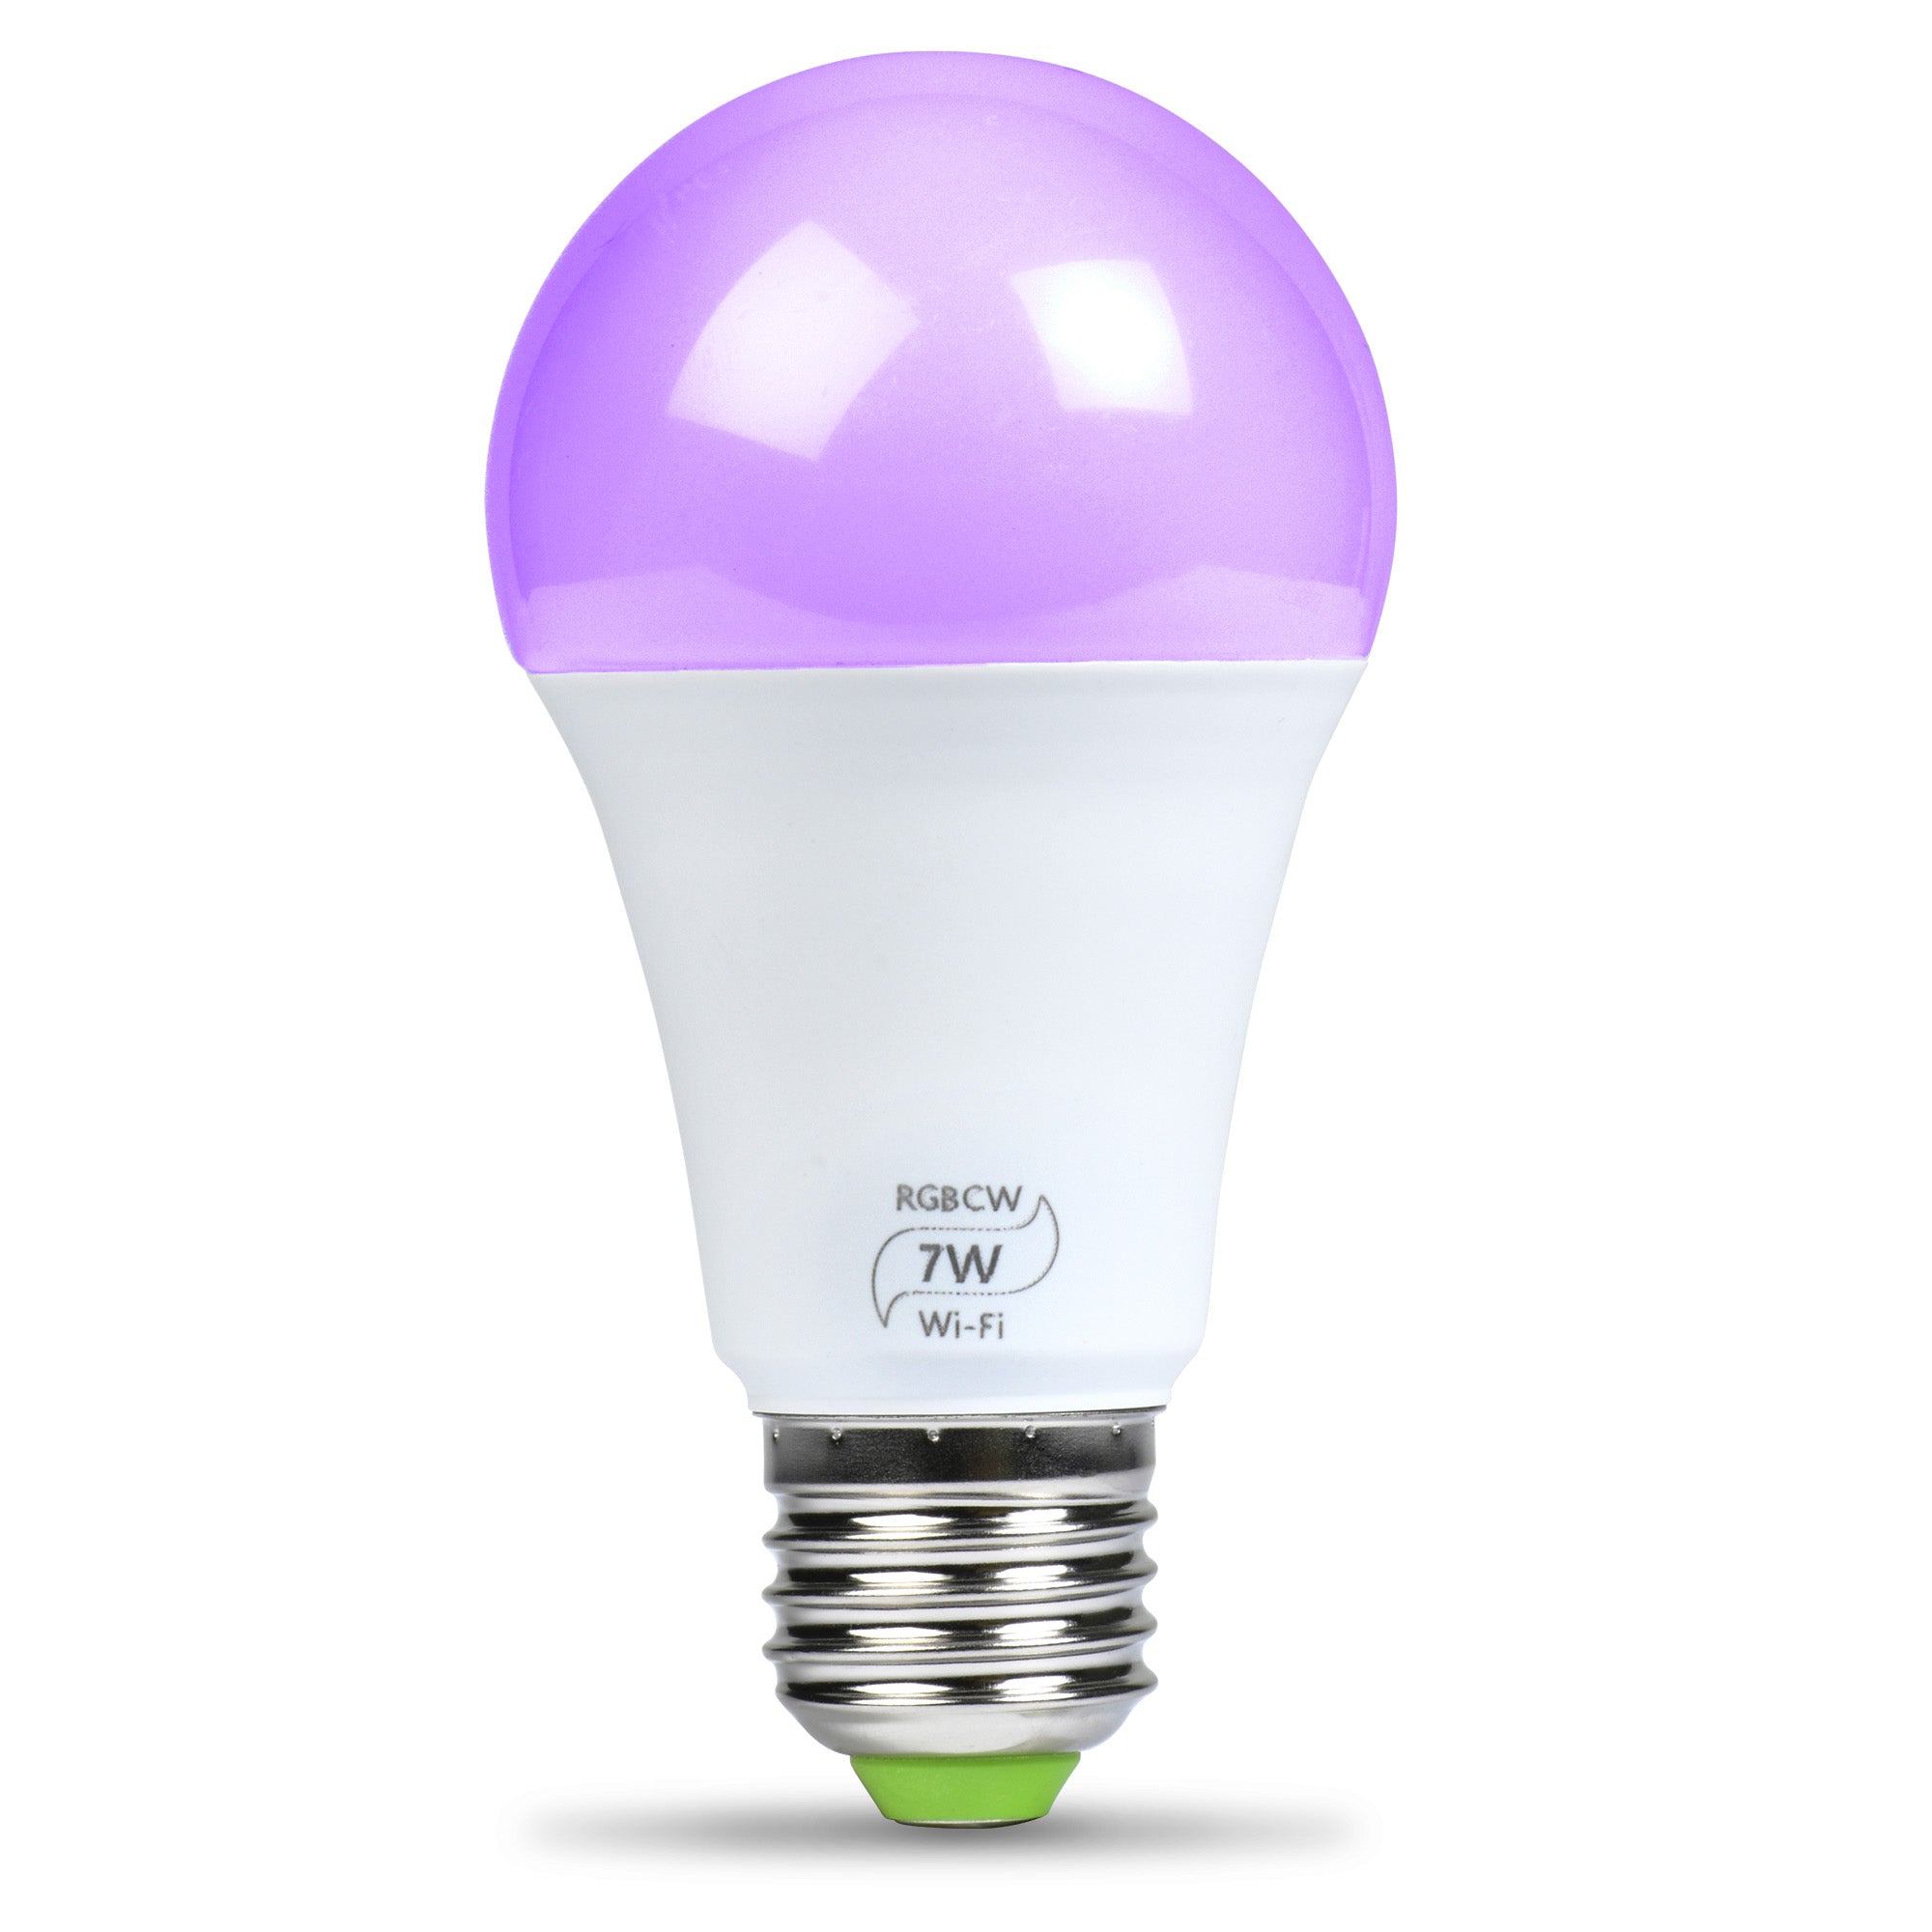 Lao Besættelse forgænger Flux WiFi Smart LED Light Bulb – Flux Smart Lighting